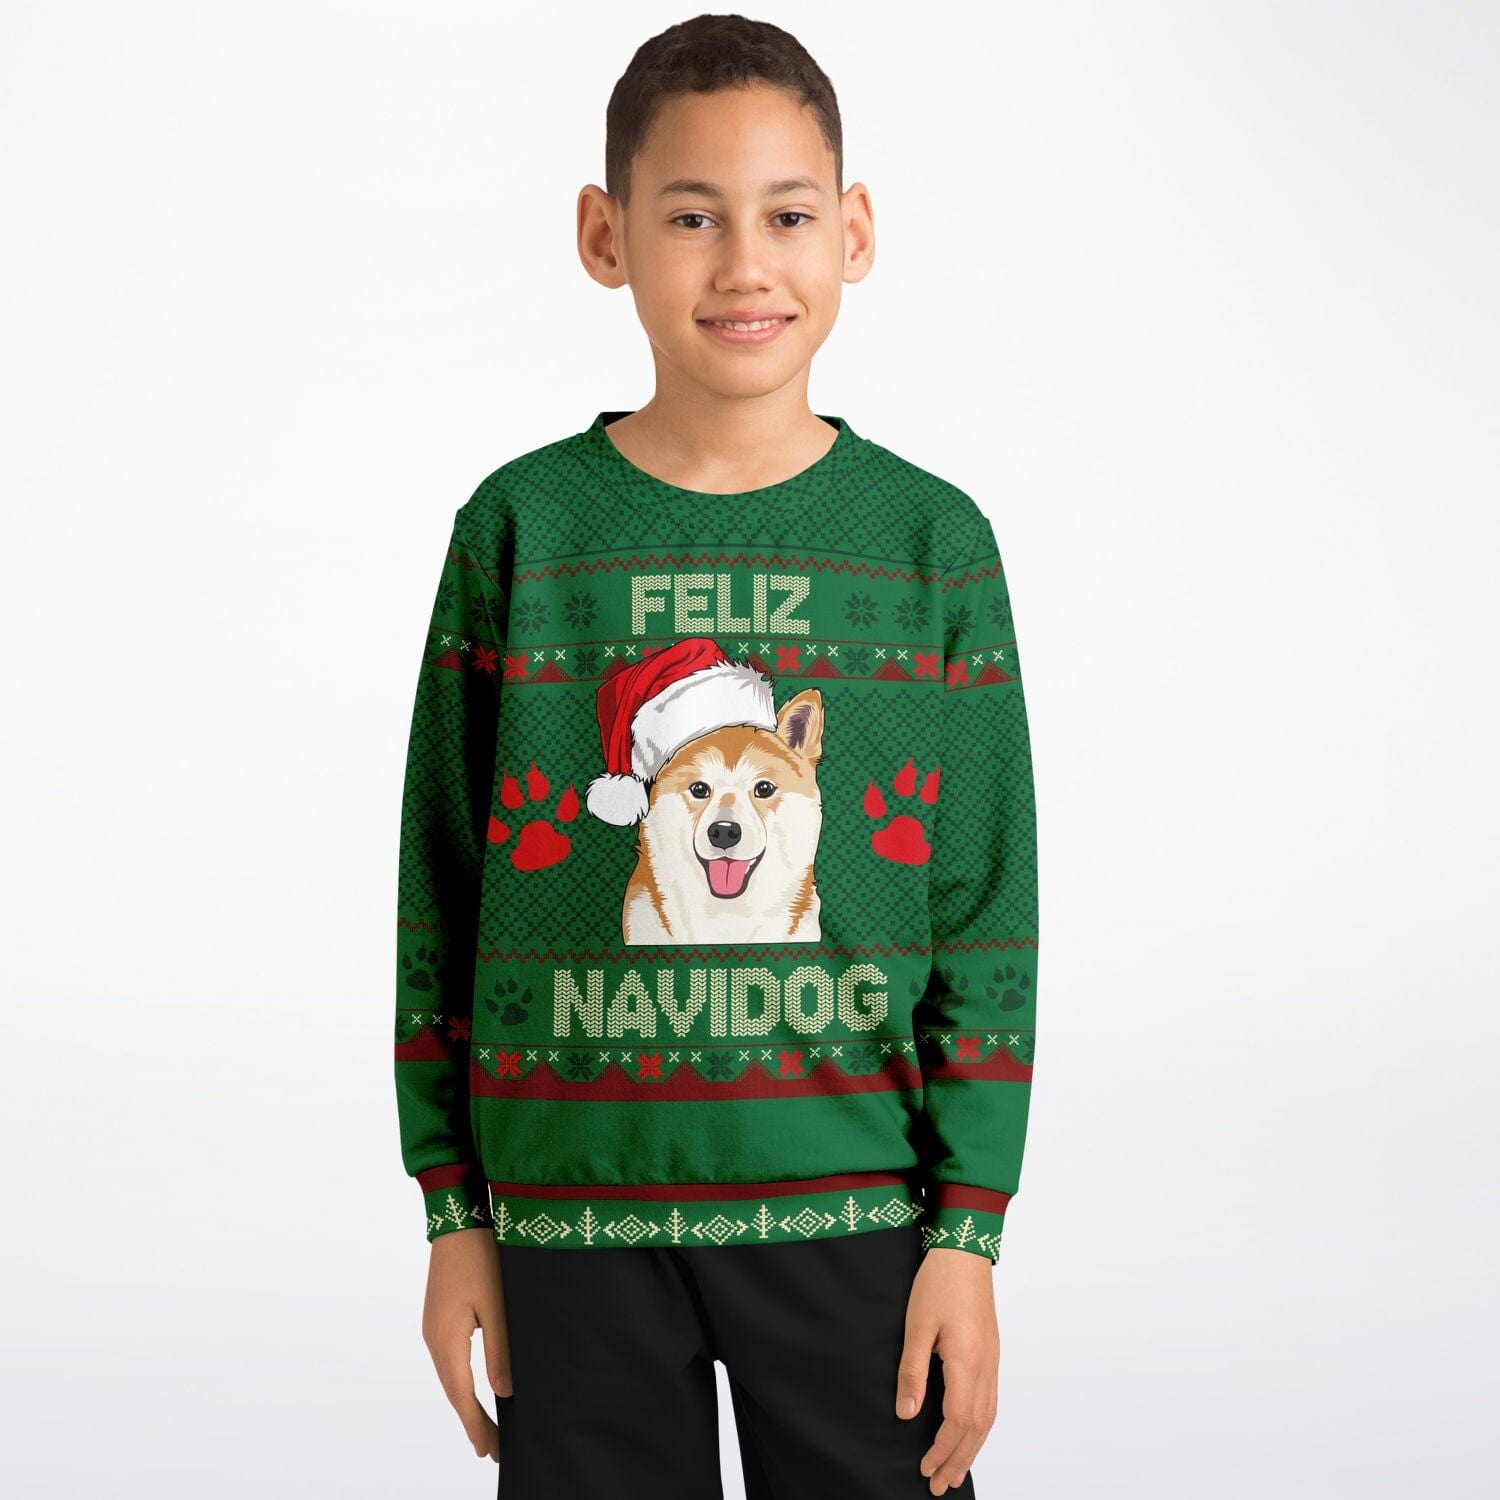 Shiba Dog Meme Xmas Christmas Ugly Sweater - Kaiteez